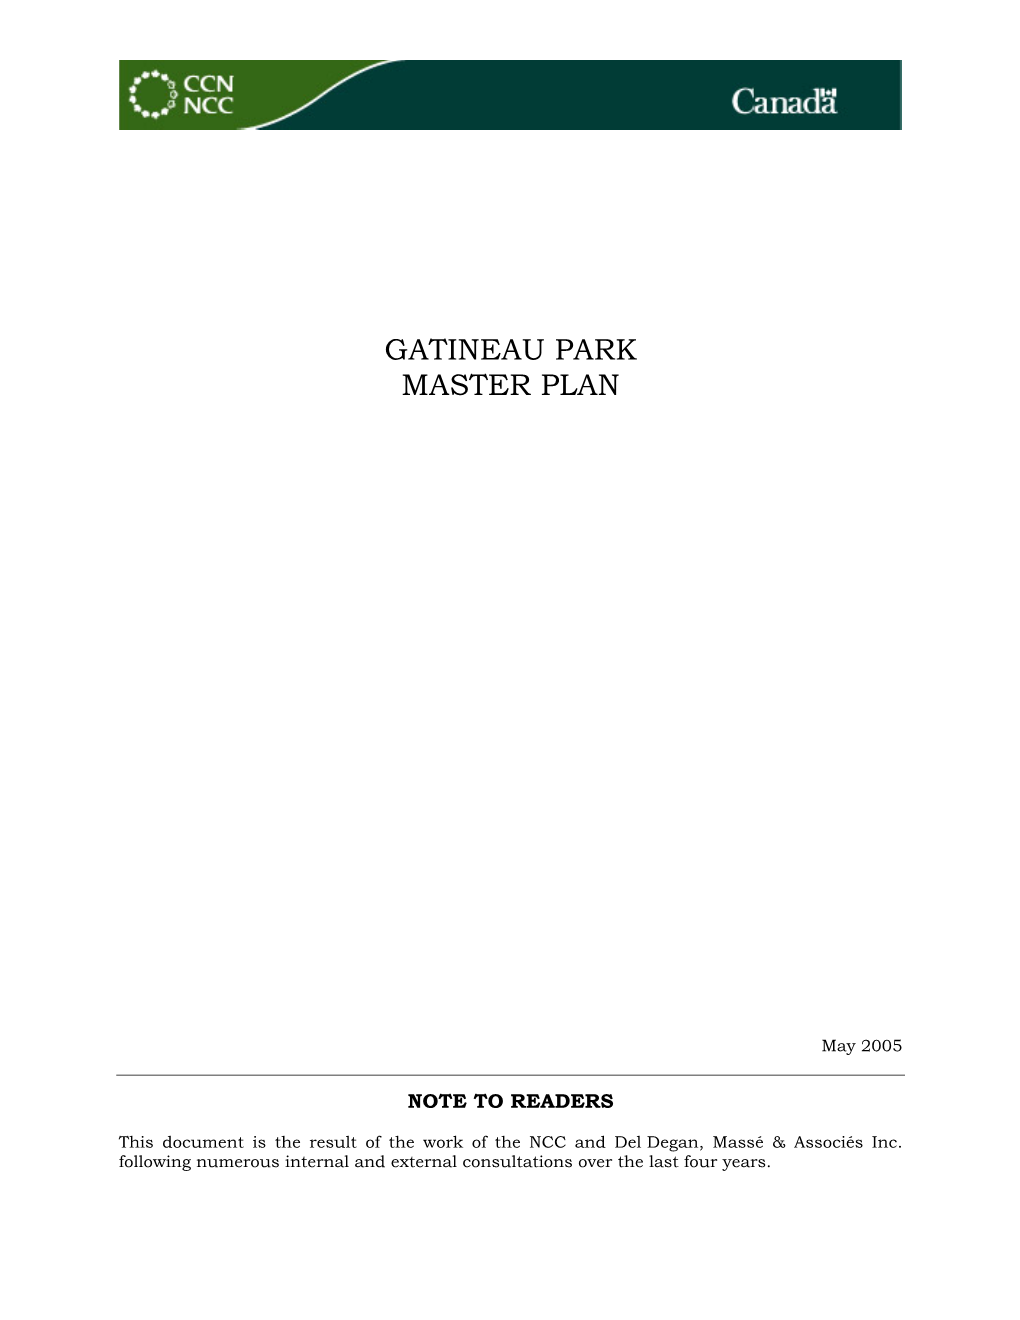 Gatineau Park Master Plan